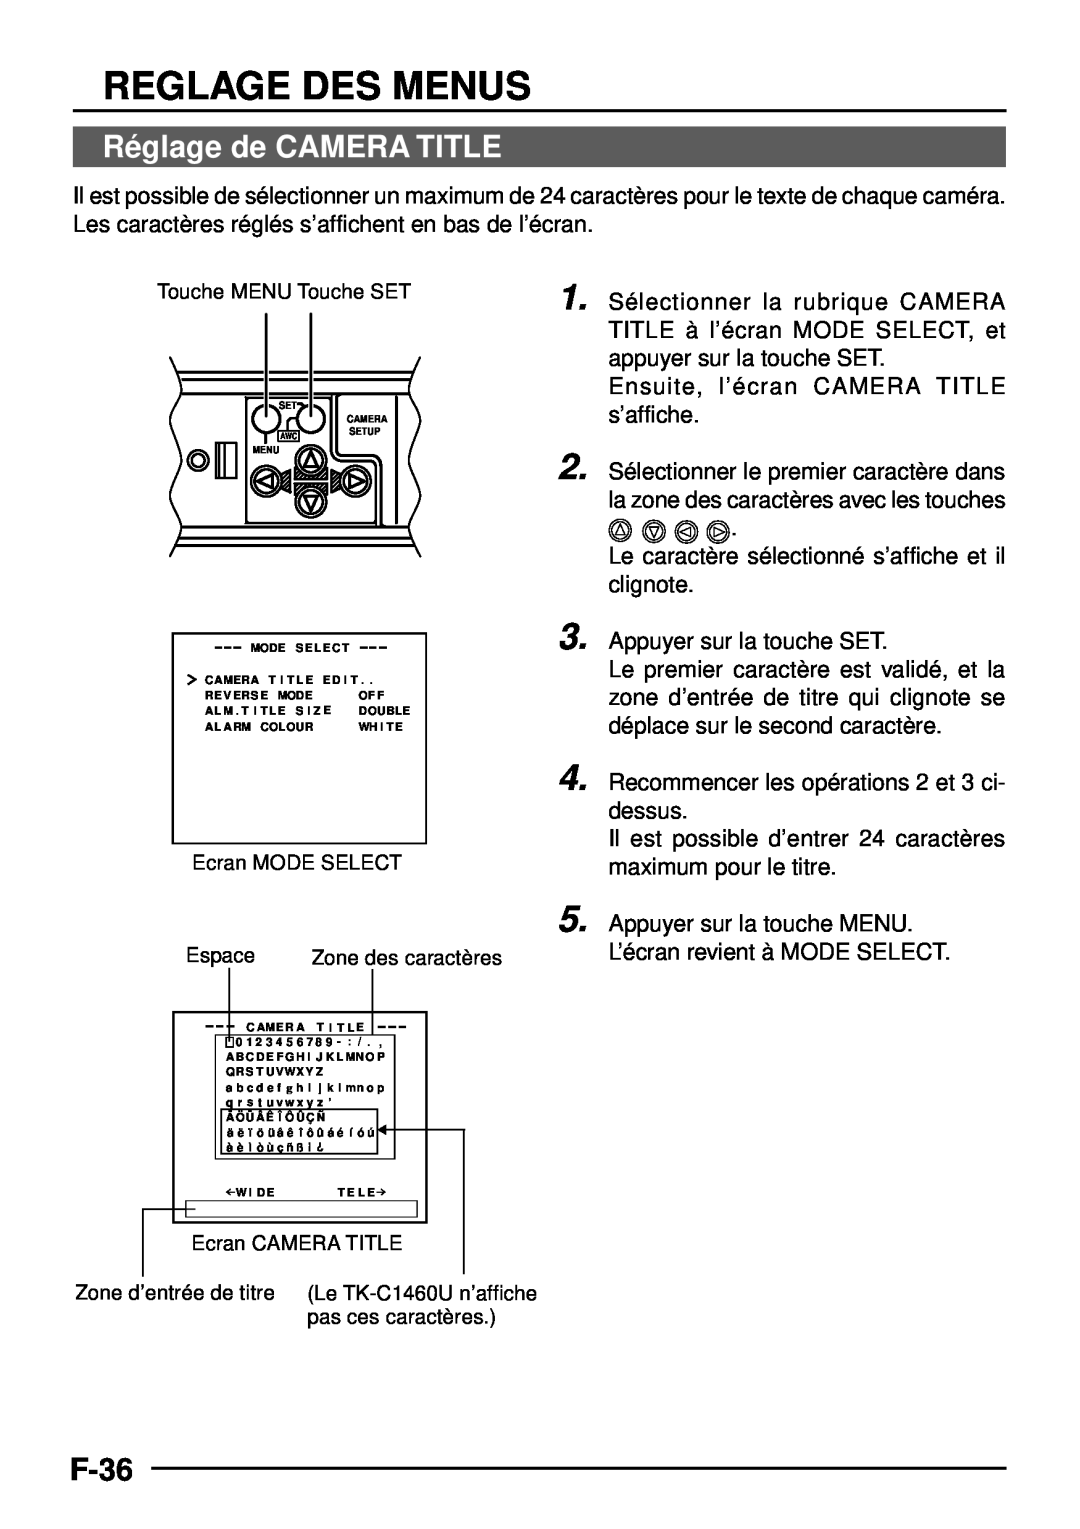 JVC TK-C1460 manual Ré glage de CAMERA TITLE, F-36, Reglage Des Menus 